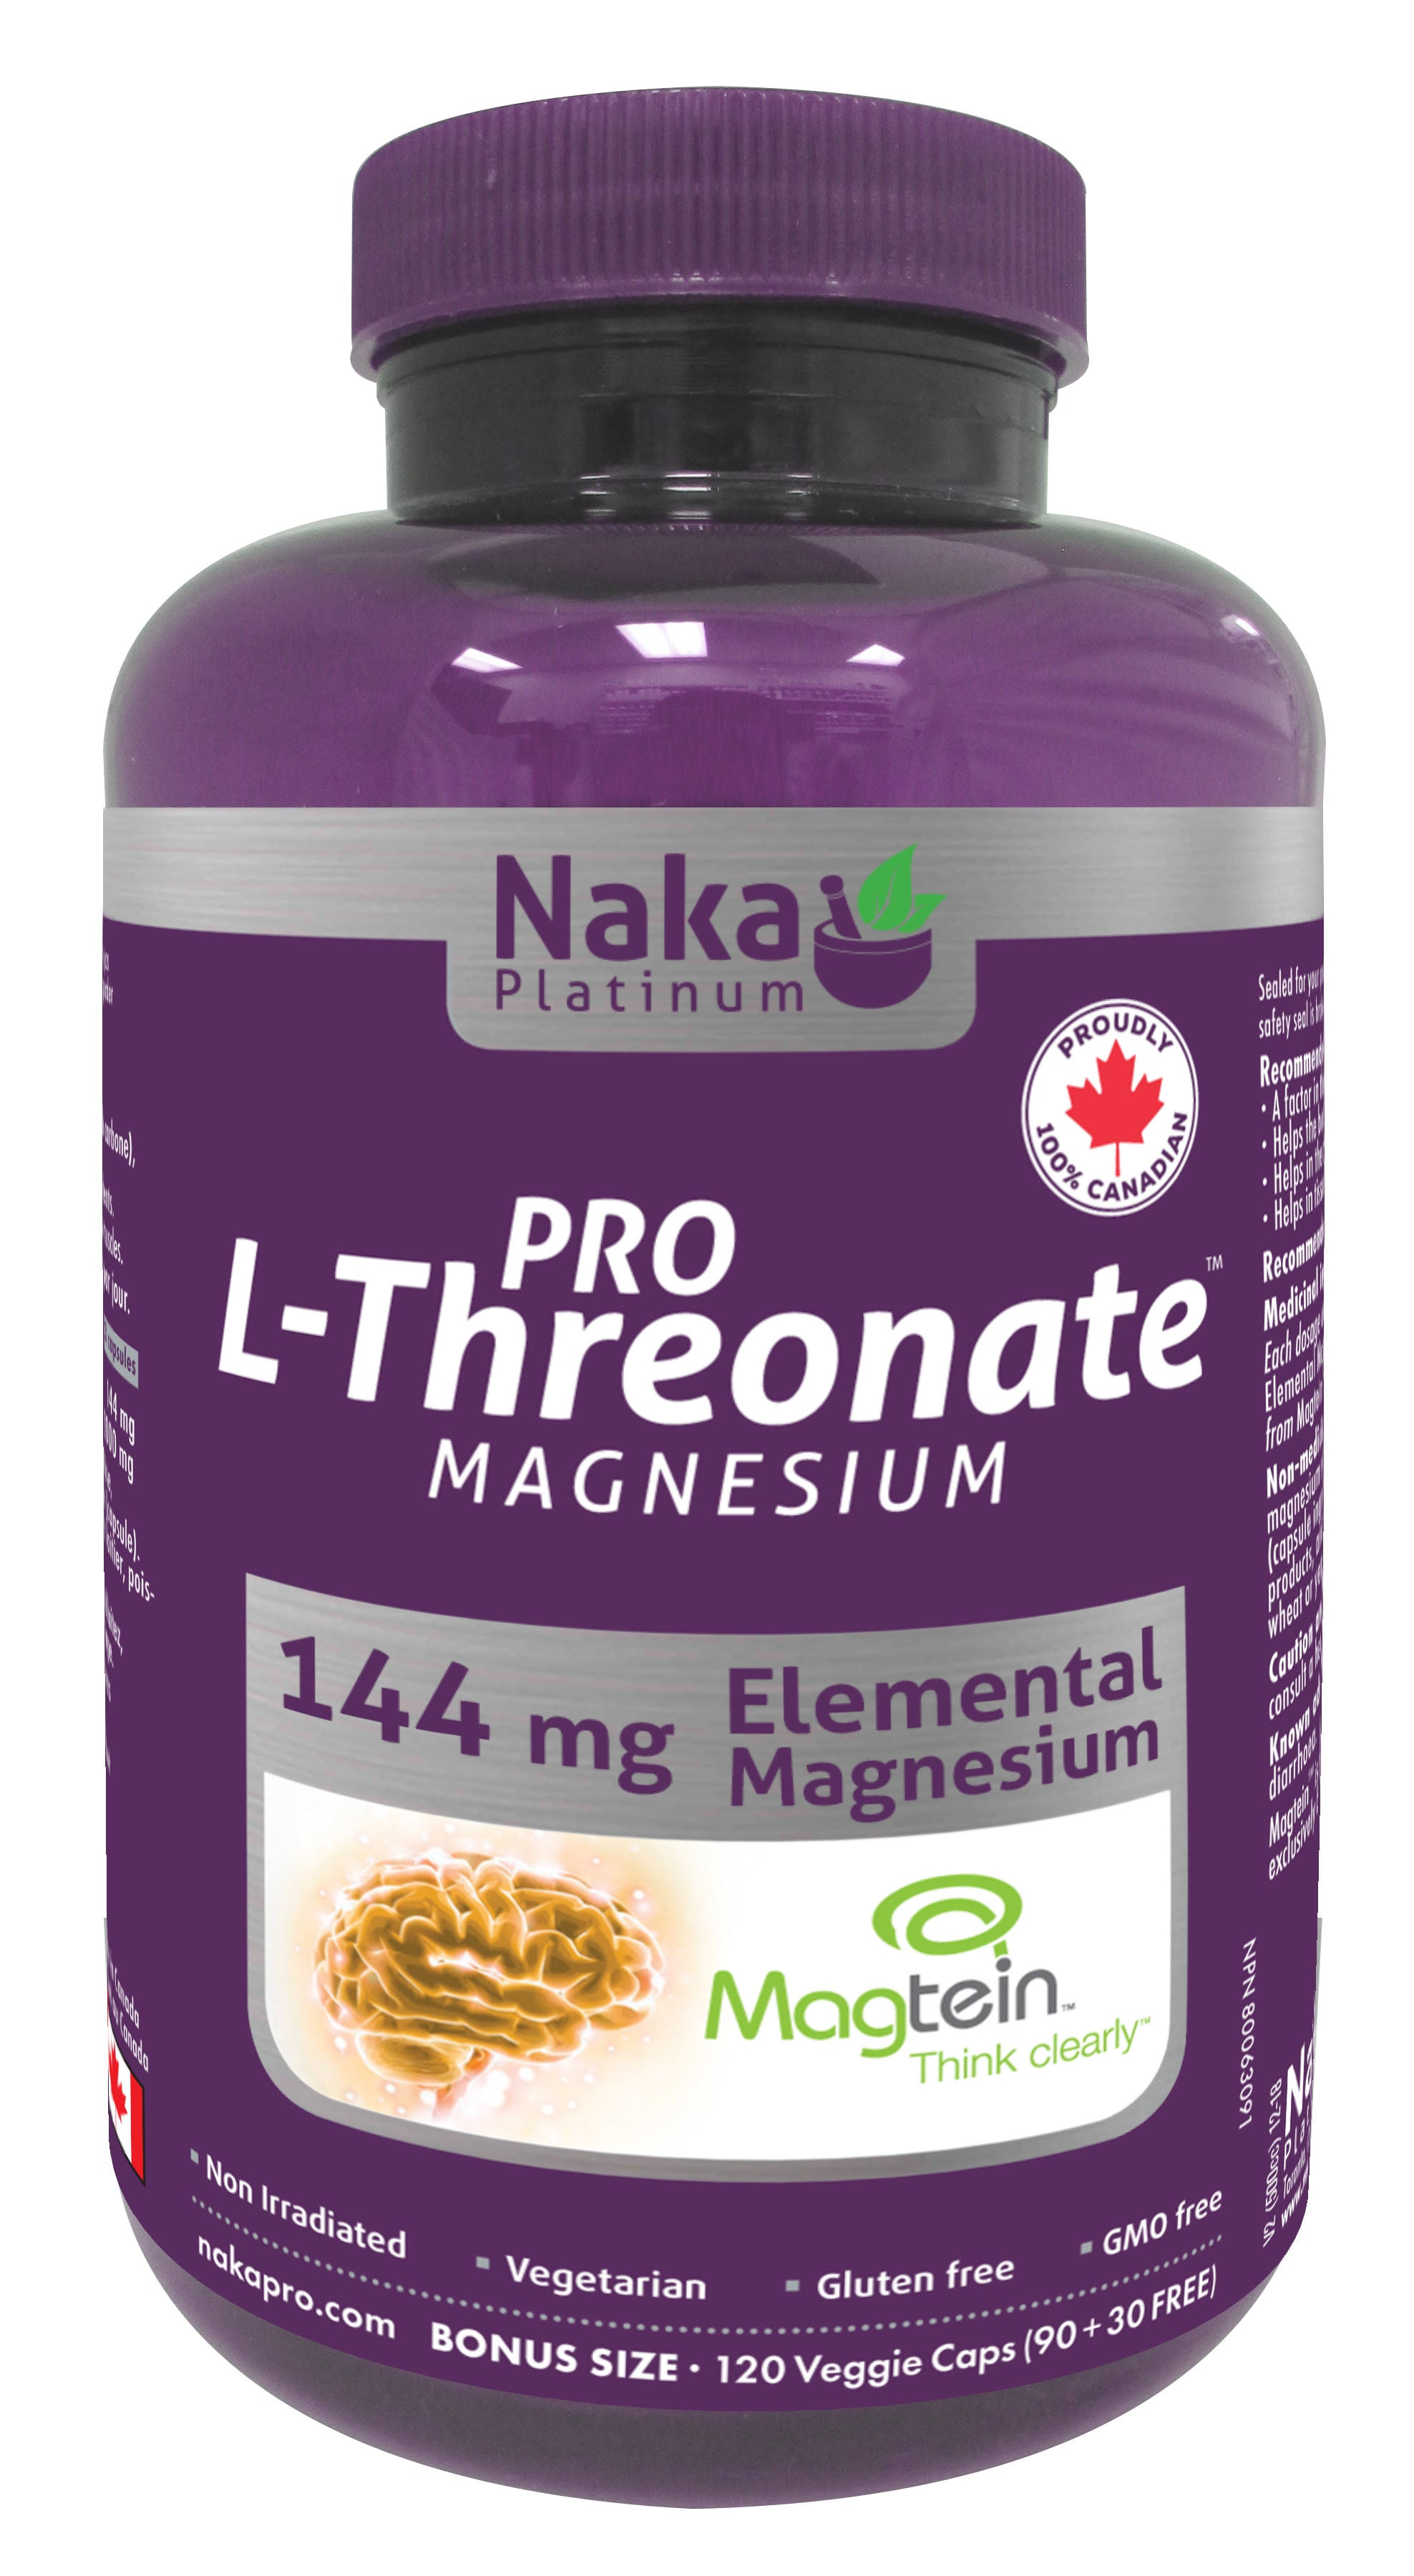 Naka PRO Magnesium L-Threonate